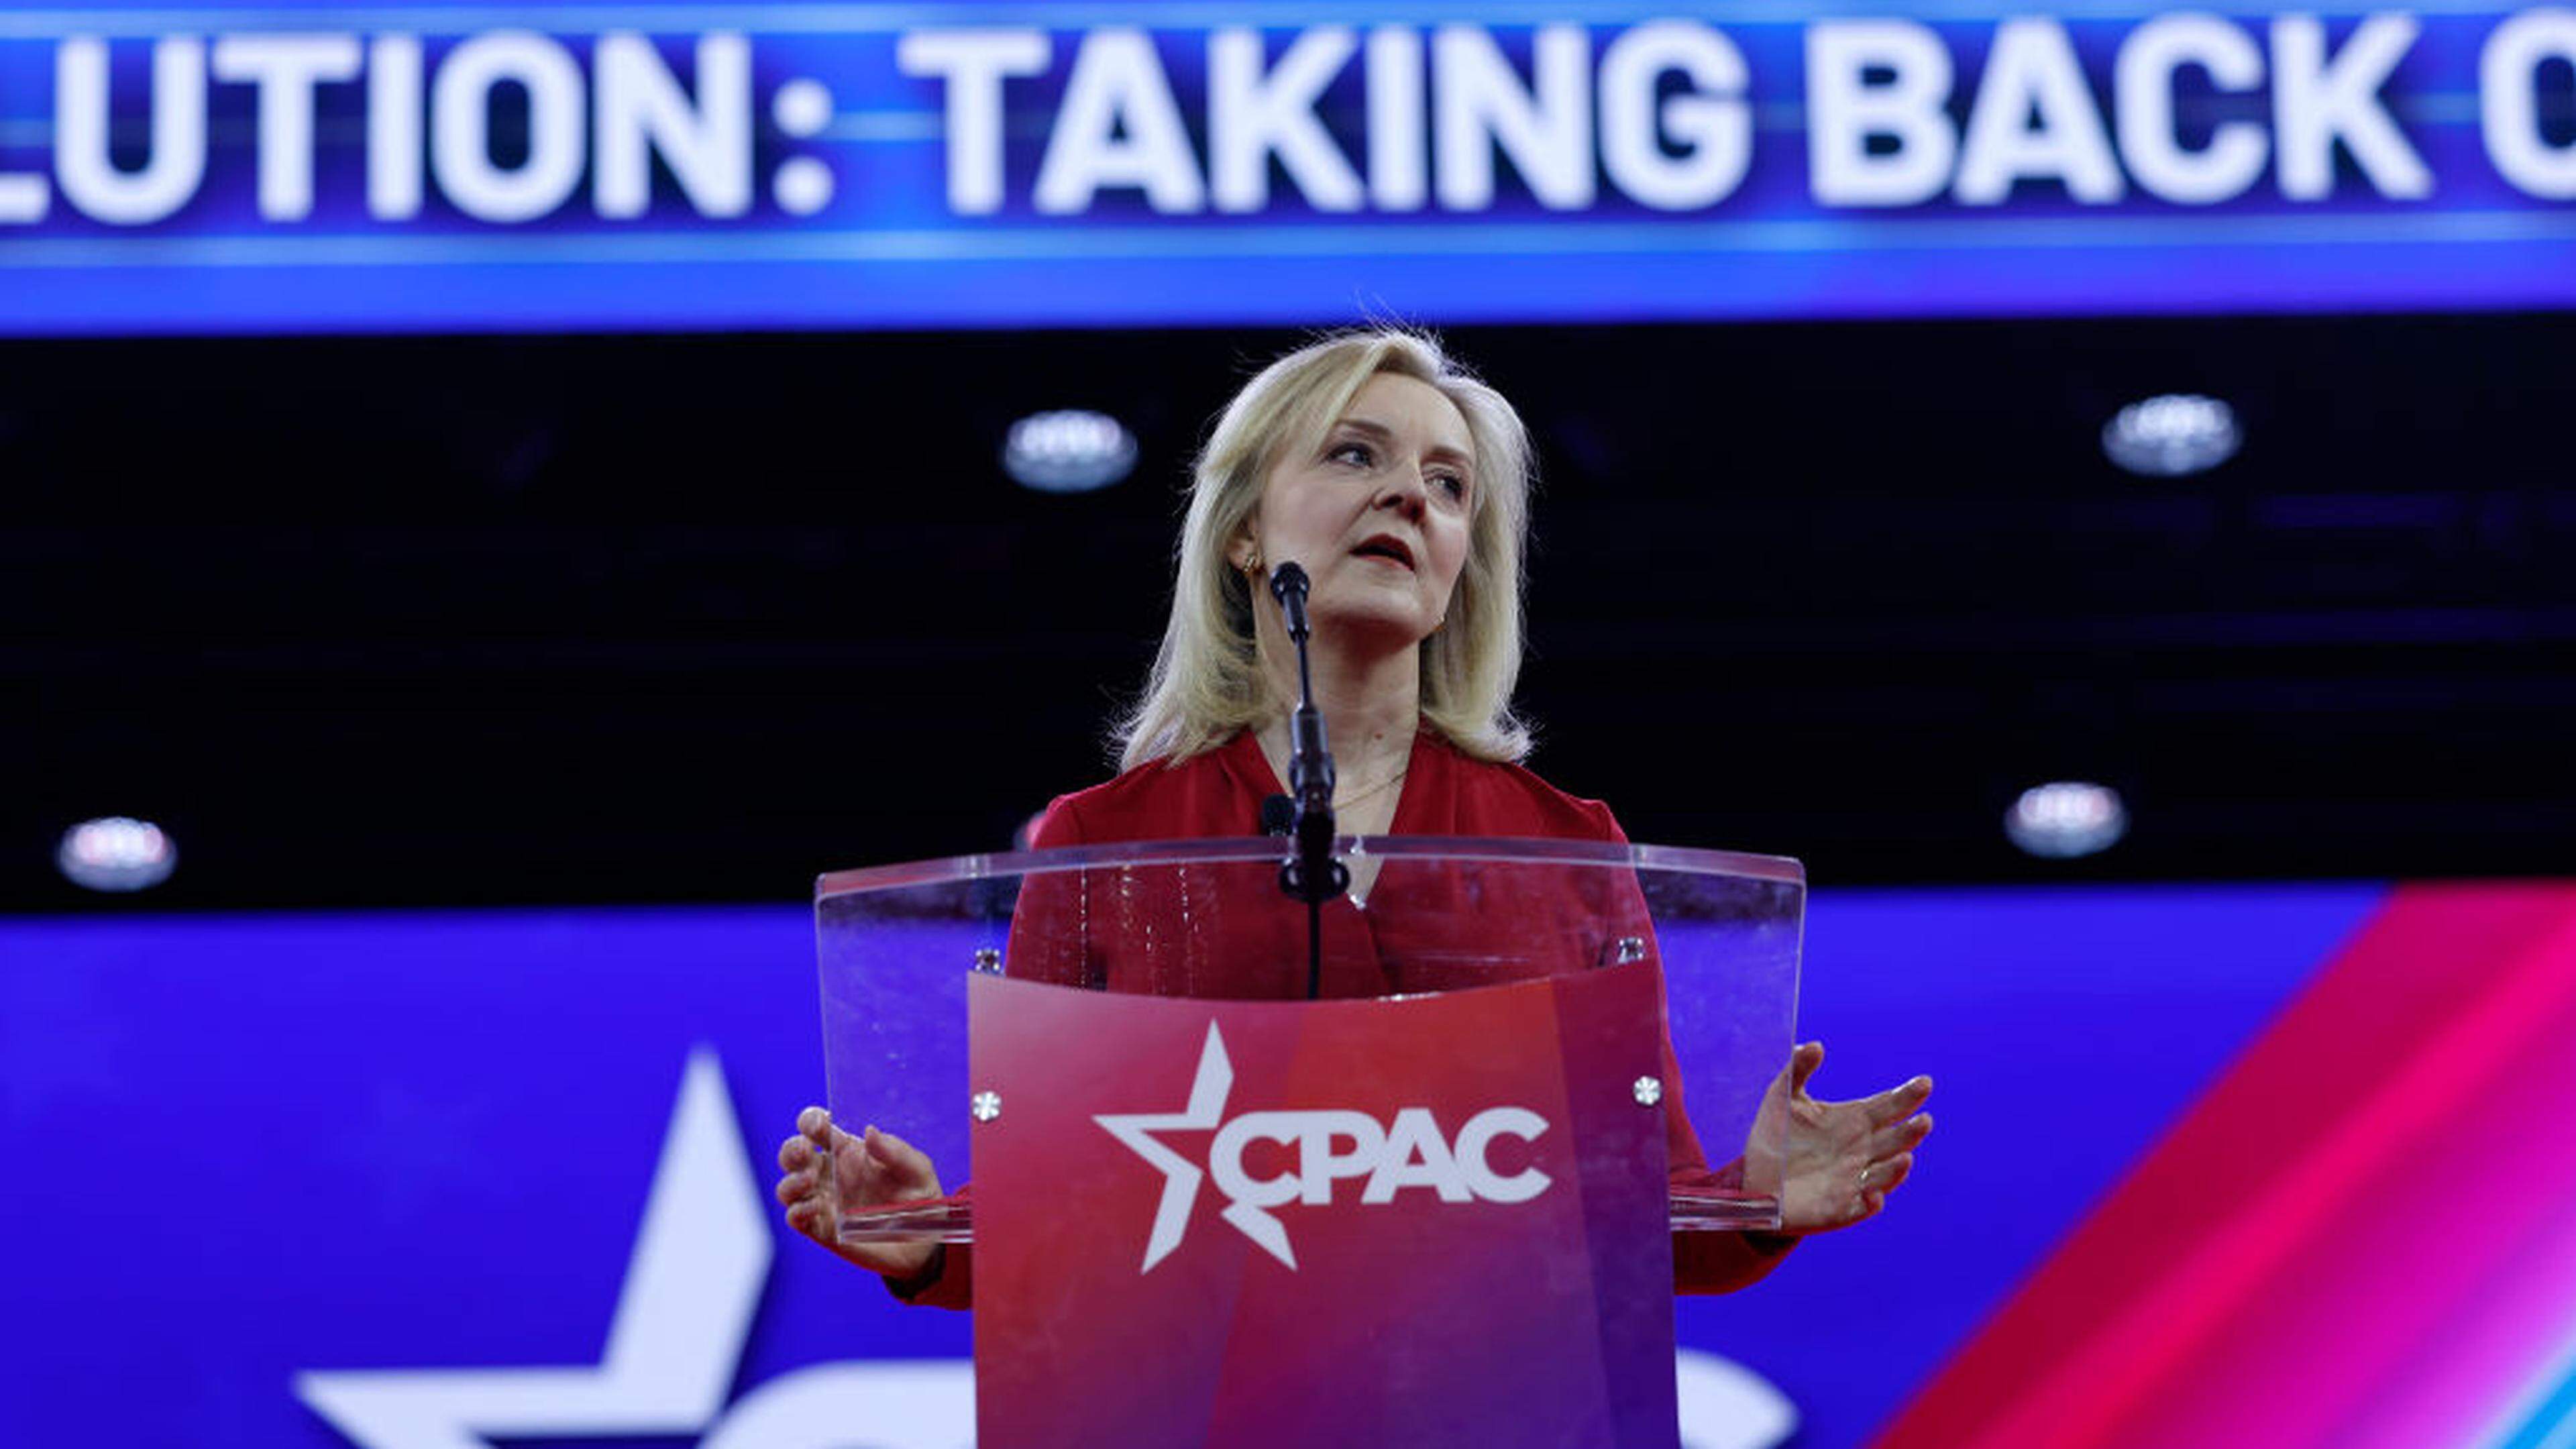 Ein Auftritt von Liz Truss bei der ultrakonservativen "Conservative Political Action Conference (CPAC)“ in den USA sorgte für Aufsehen.